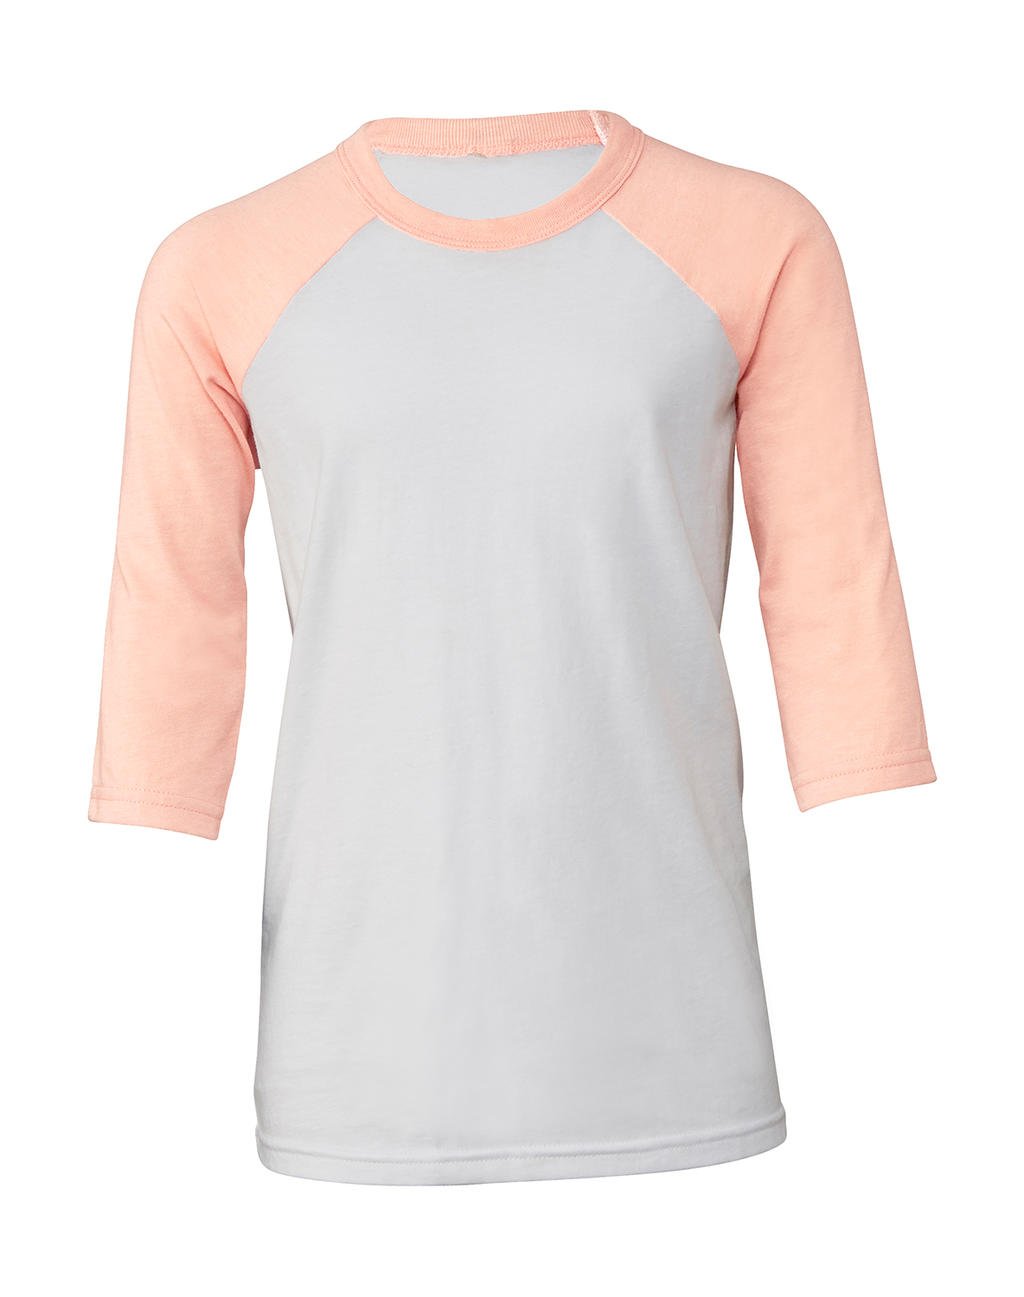 Detské tričko s baseballovými 3/4 rukávmi - white/heather peach